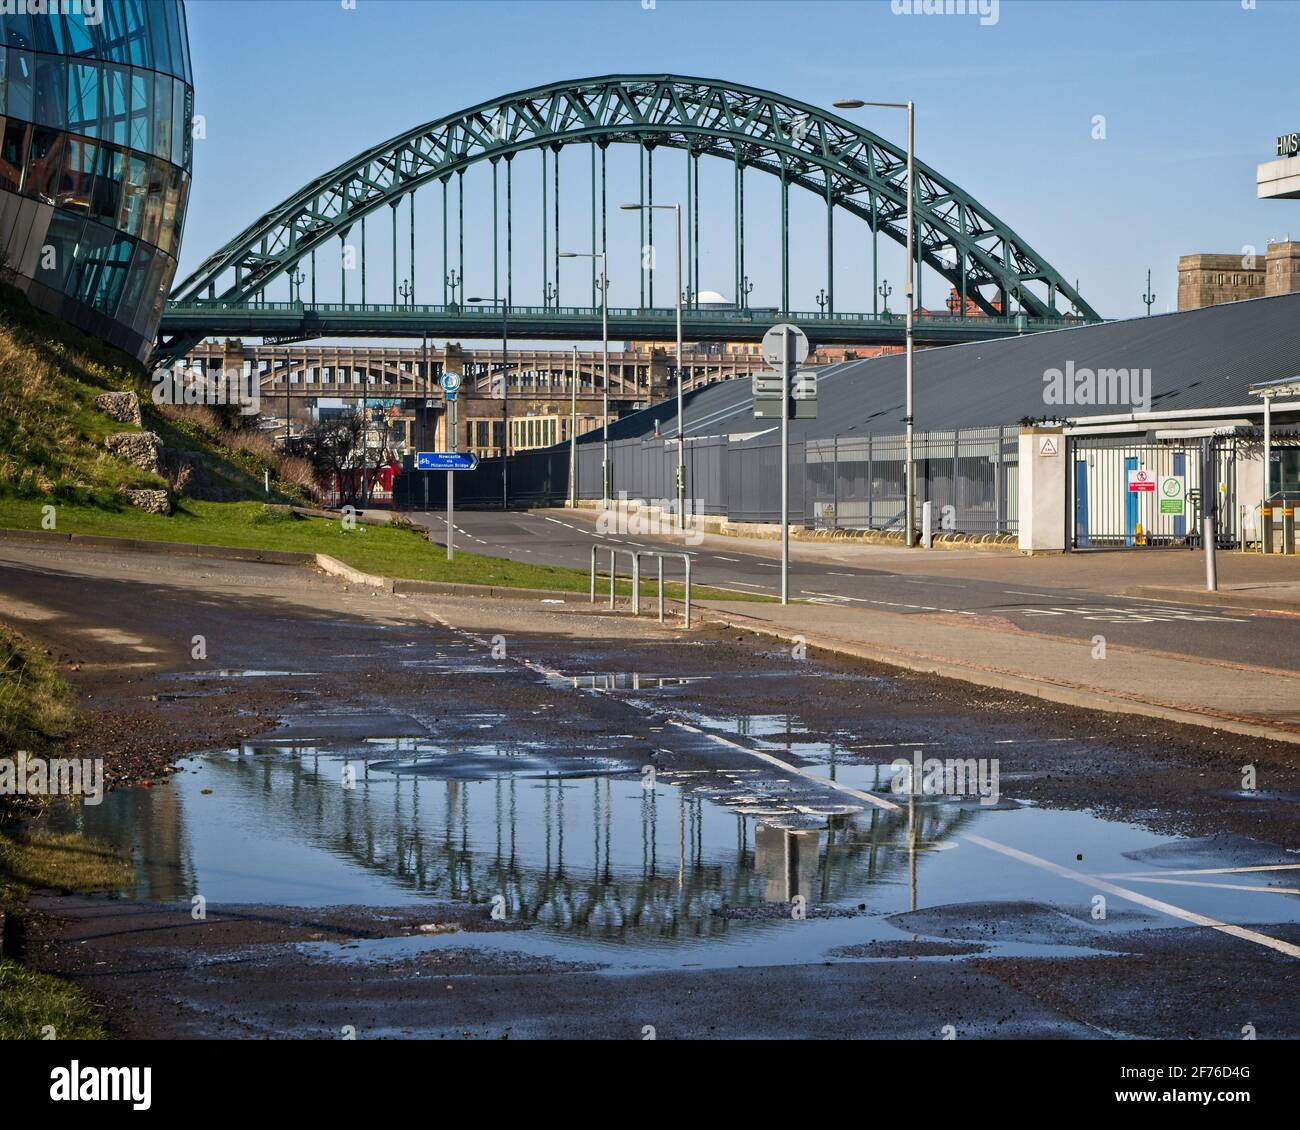 L'iconico ponte Newcastle Tyne Bridge e il suo riflesso catturati in una pozza sul lato Gateshead del fiume Tyne. Foto Stock